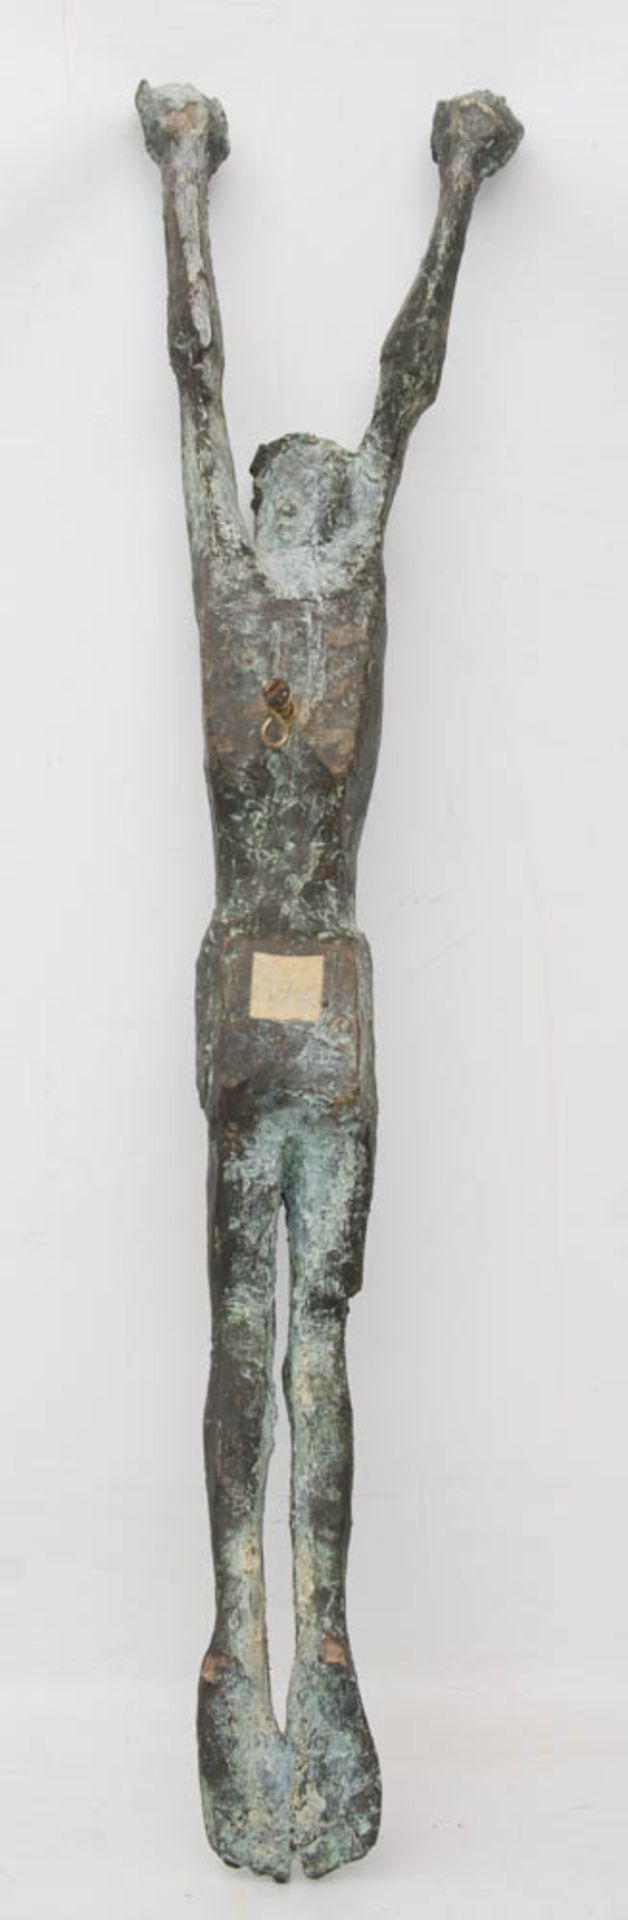 UNBEKANNTER KÜNSTLER, Christus ohne Kreuz, Bronzeguss, 20 Jh.Starke Patina, guter Zustand.69 cm L. - Bild 5 aus 5